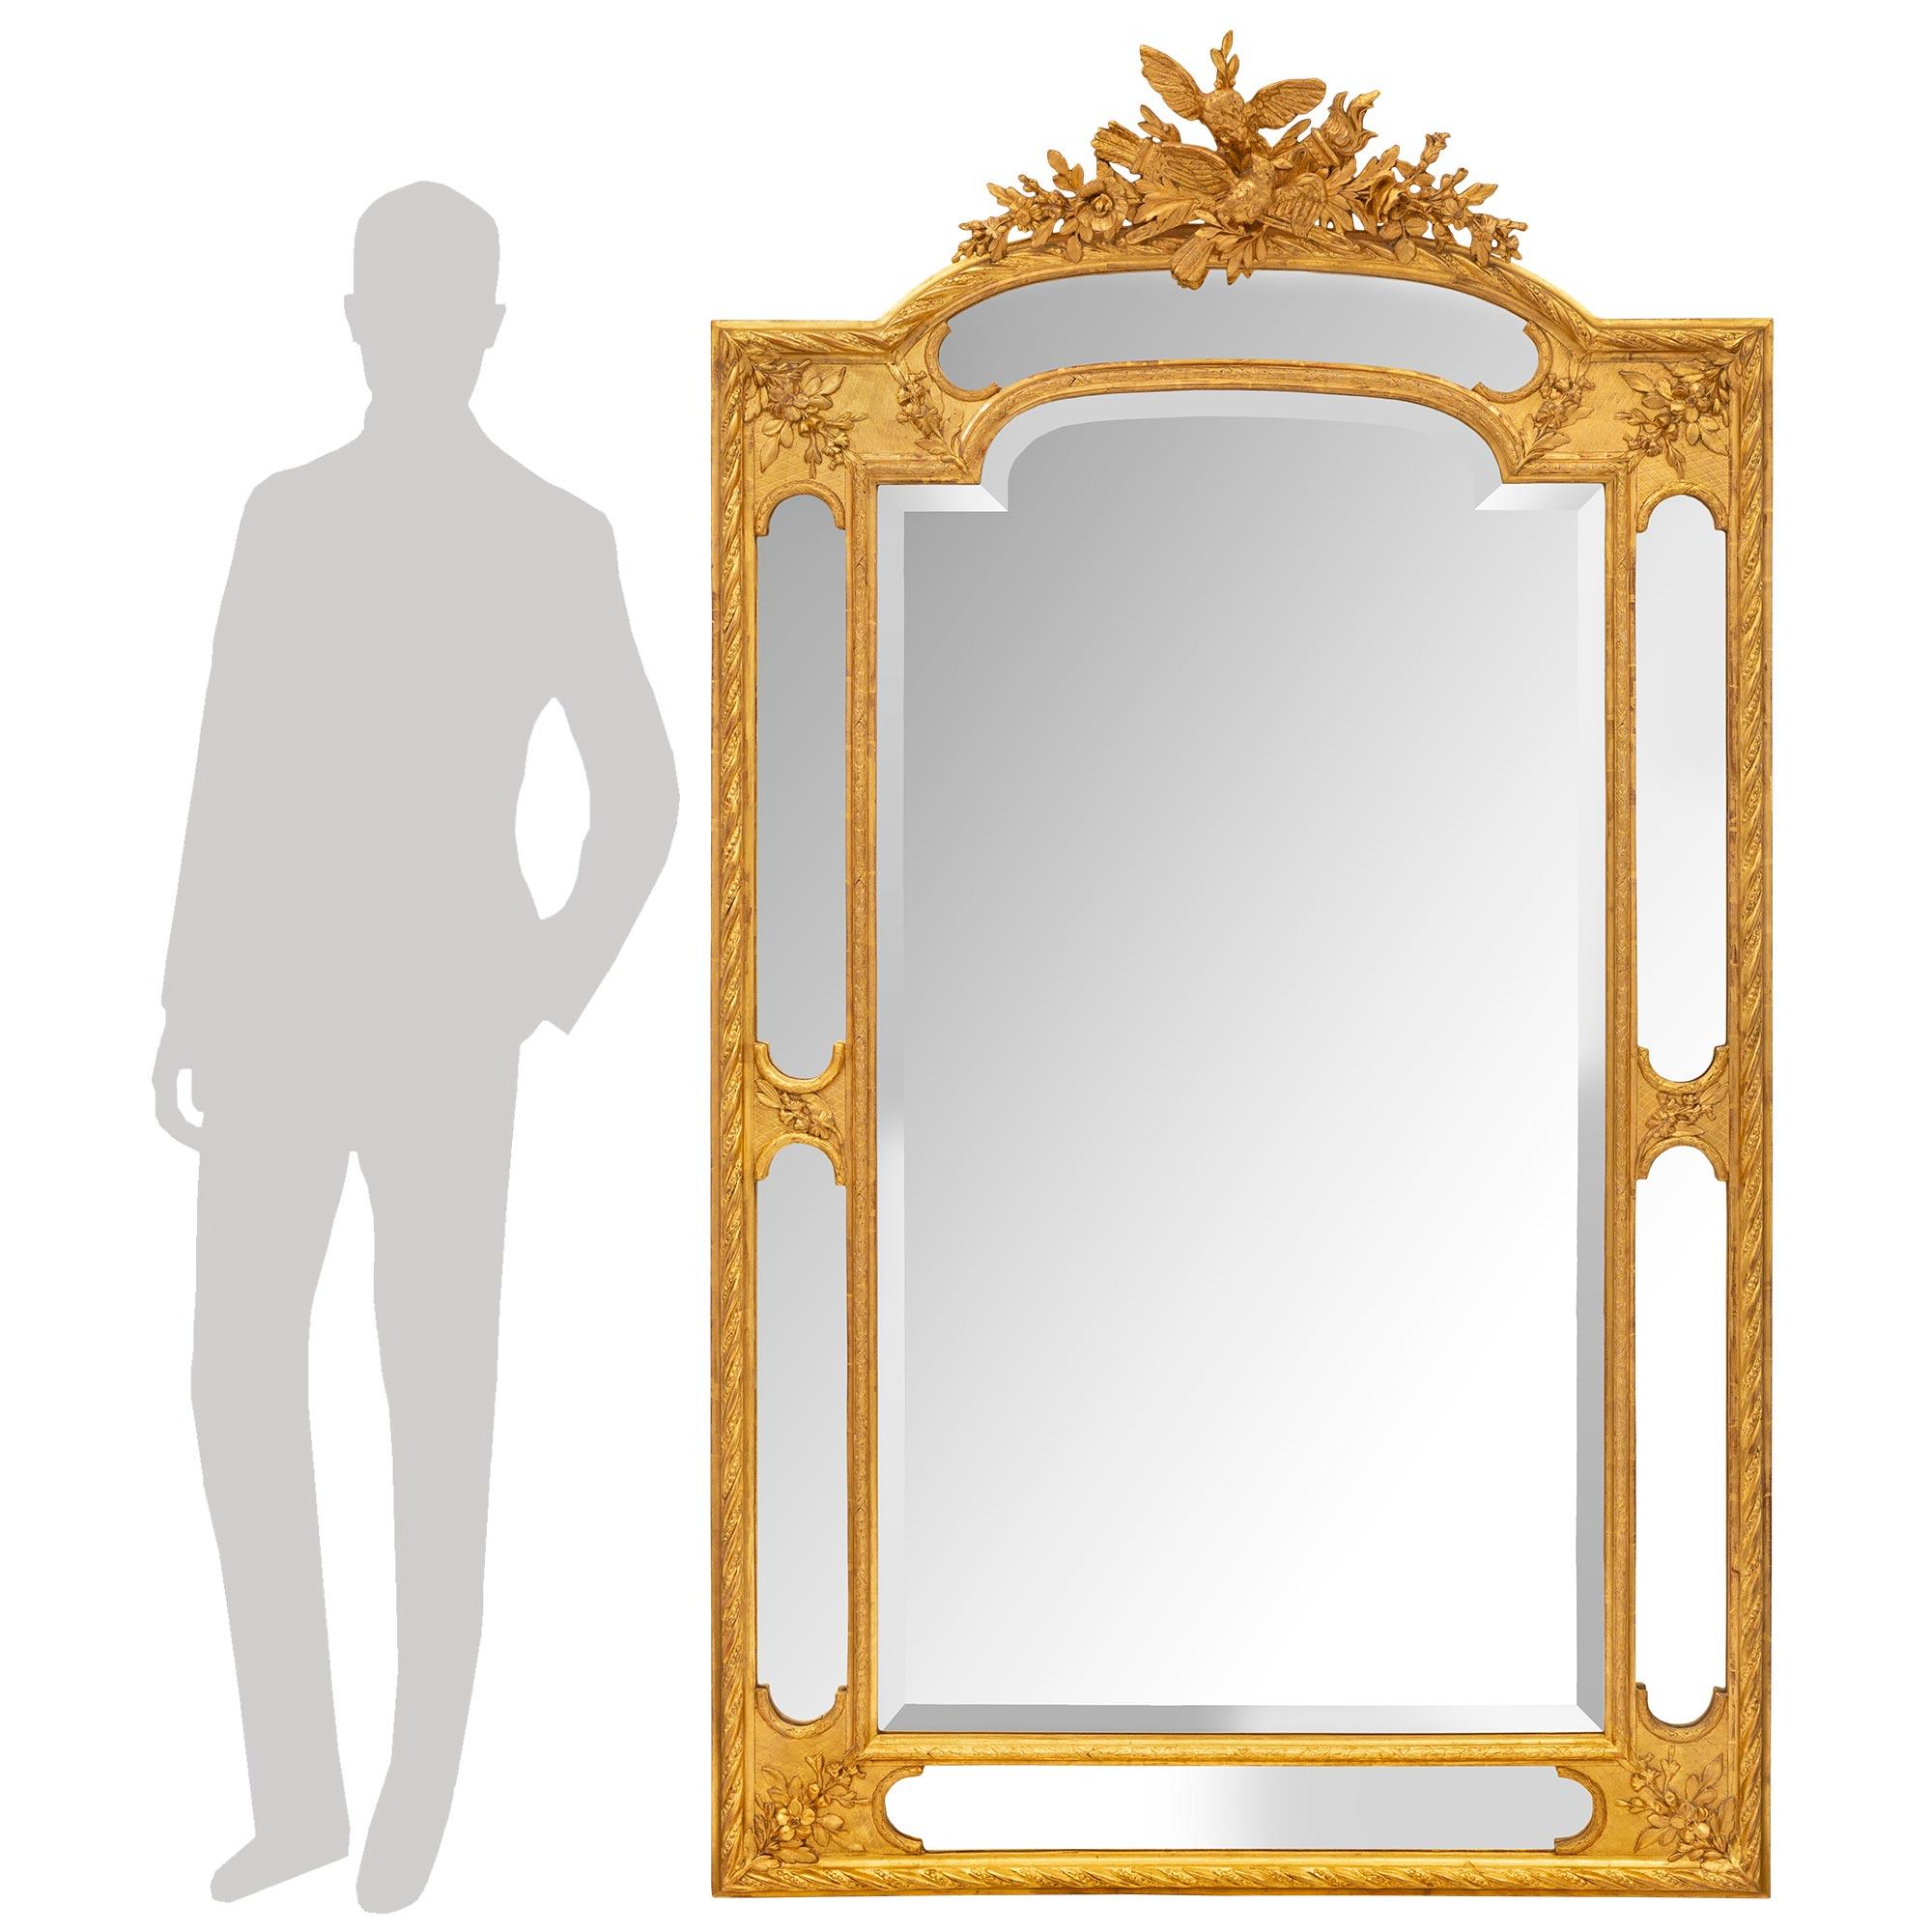 Eine sehr elegante Französisch Mitte des 19. Jahrhunderts Louis XVI st. vergoldet Spiegel doppelt gerahmt. Der Spiegel bewahrt alle seine ursprünglichen Spiegelplatten, die in hübsch gebundene Lorbeerbänder und dekorative, gedrehte Gewandmuster an